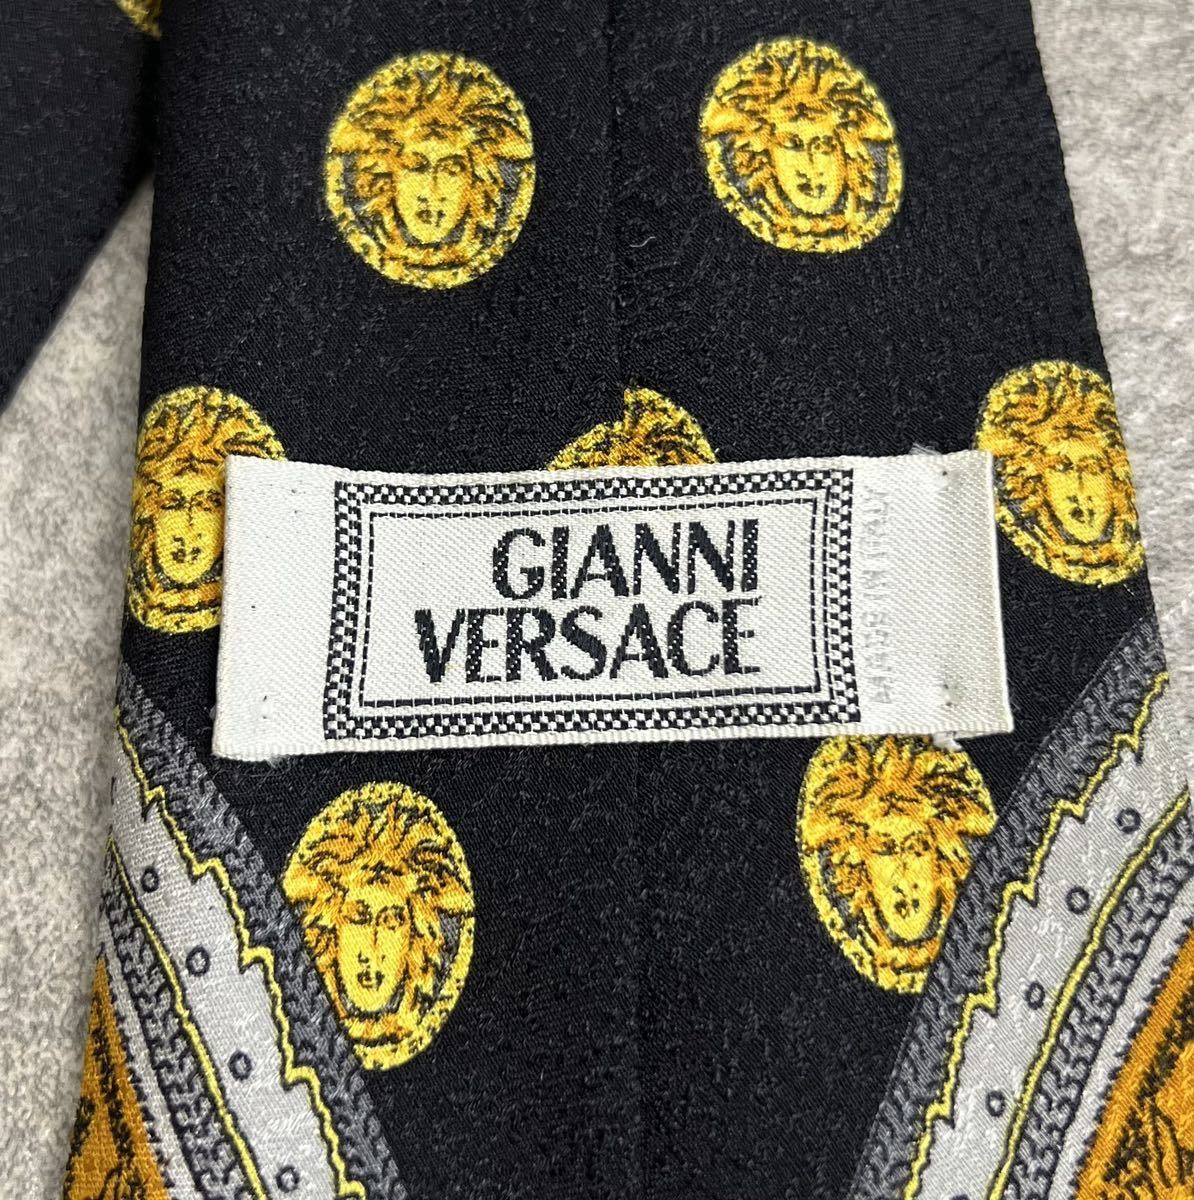  редкий шедевр прекрасный товар Gianni Versace 90s vintagepeiz Lee общий рисунок галстук шелк 100% Gianni Versace Vintage Италия производства ITALY